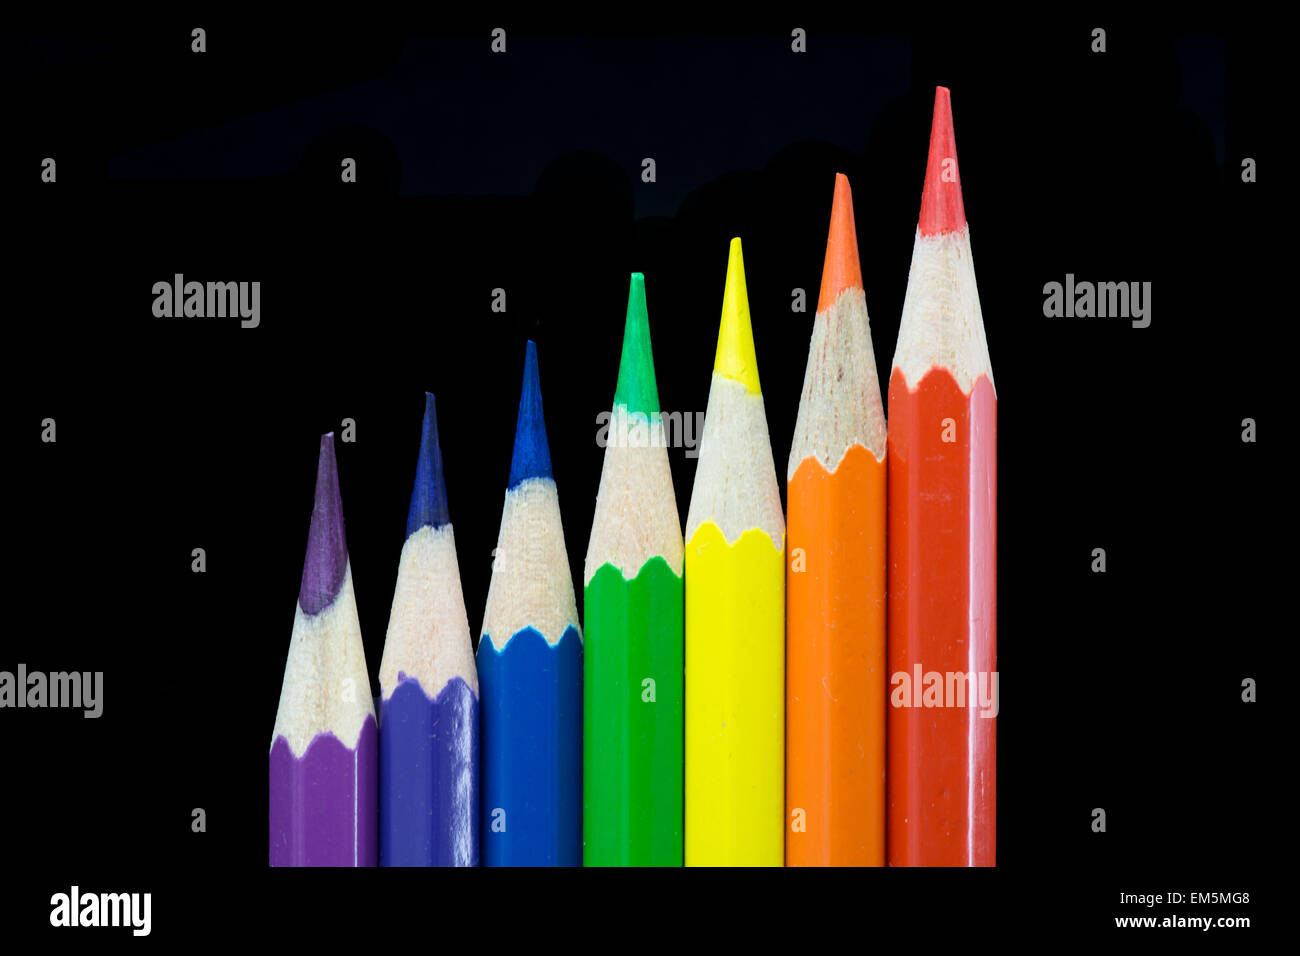 7 matite colorate disposte secondo i colori dell'arcobaleno, cioè violetta, indaco, blu, verde, giallo, arancione e rosso. Foto Stock